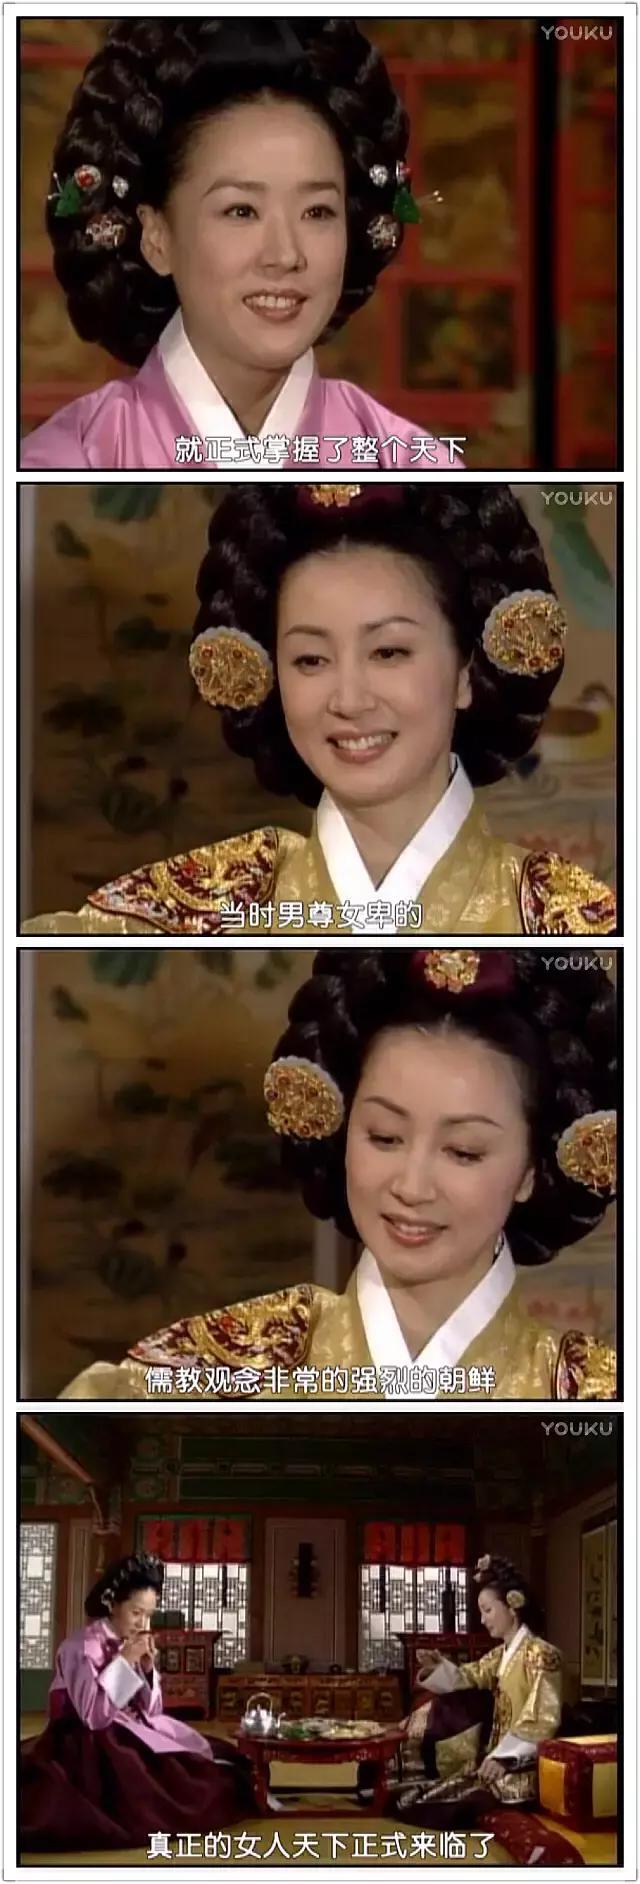 女主郑兰贞是文定皇后哥哥的小妾,计谋百出操纵政局